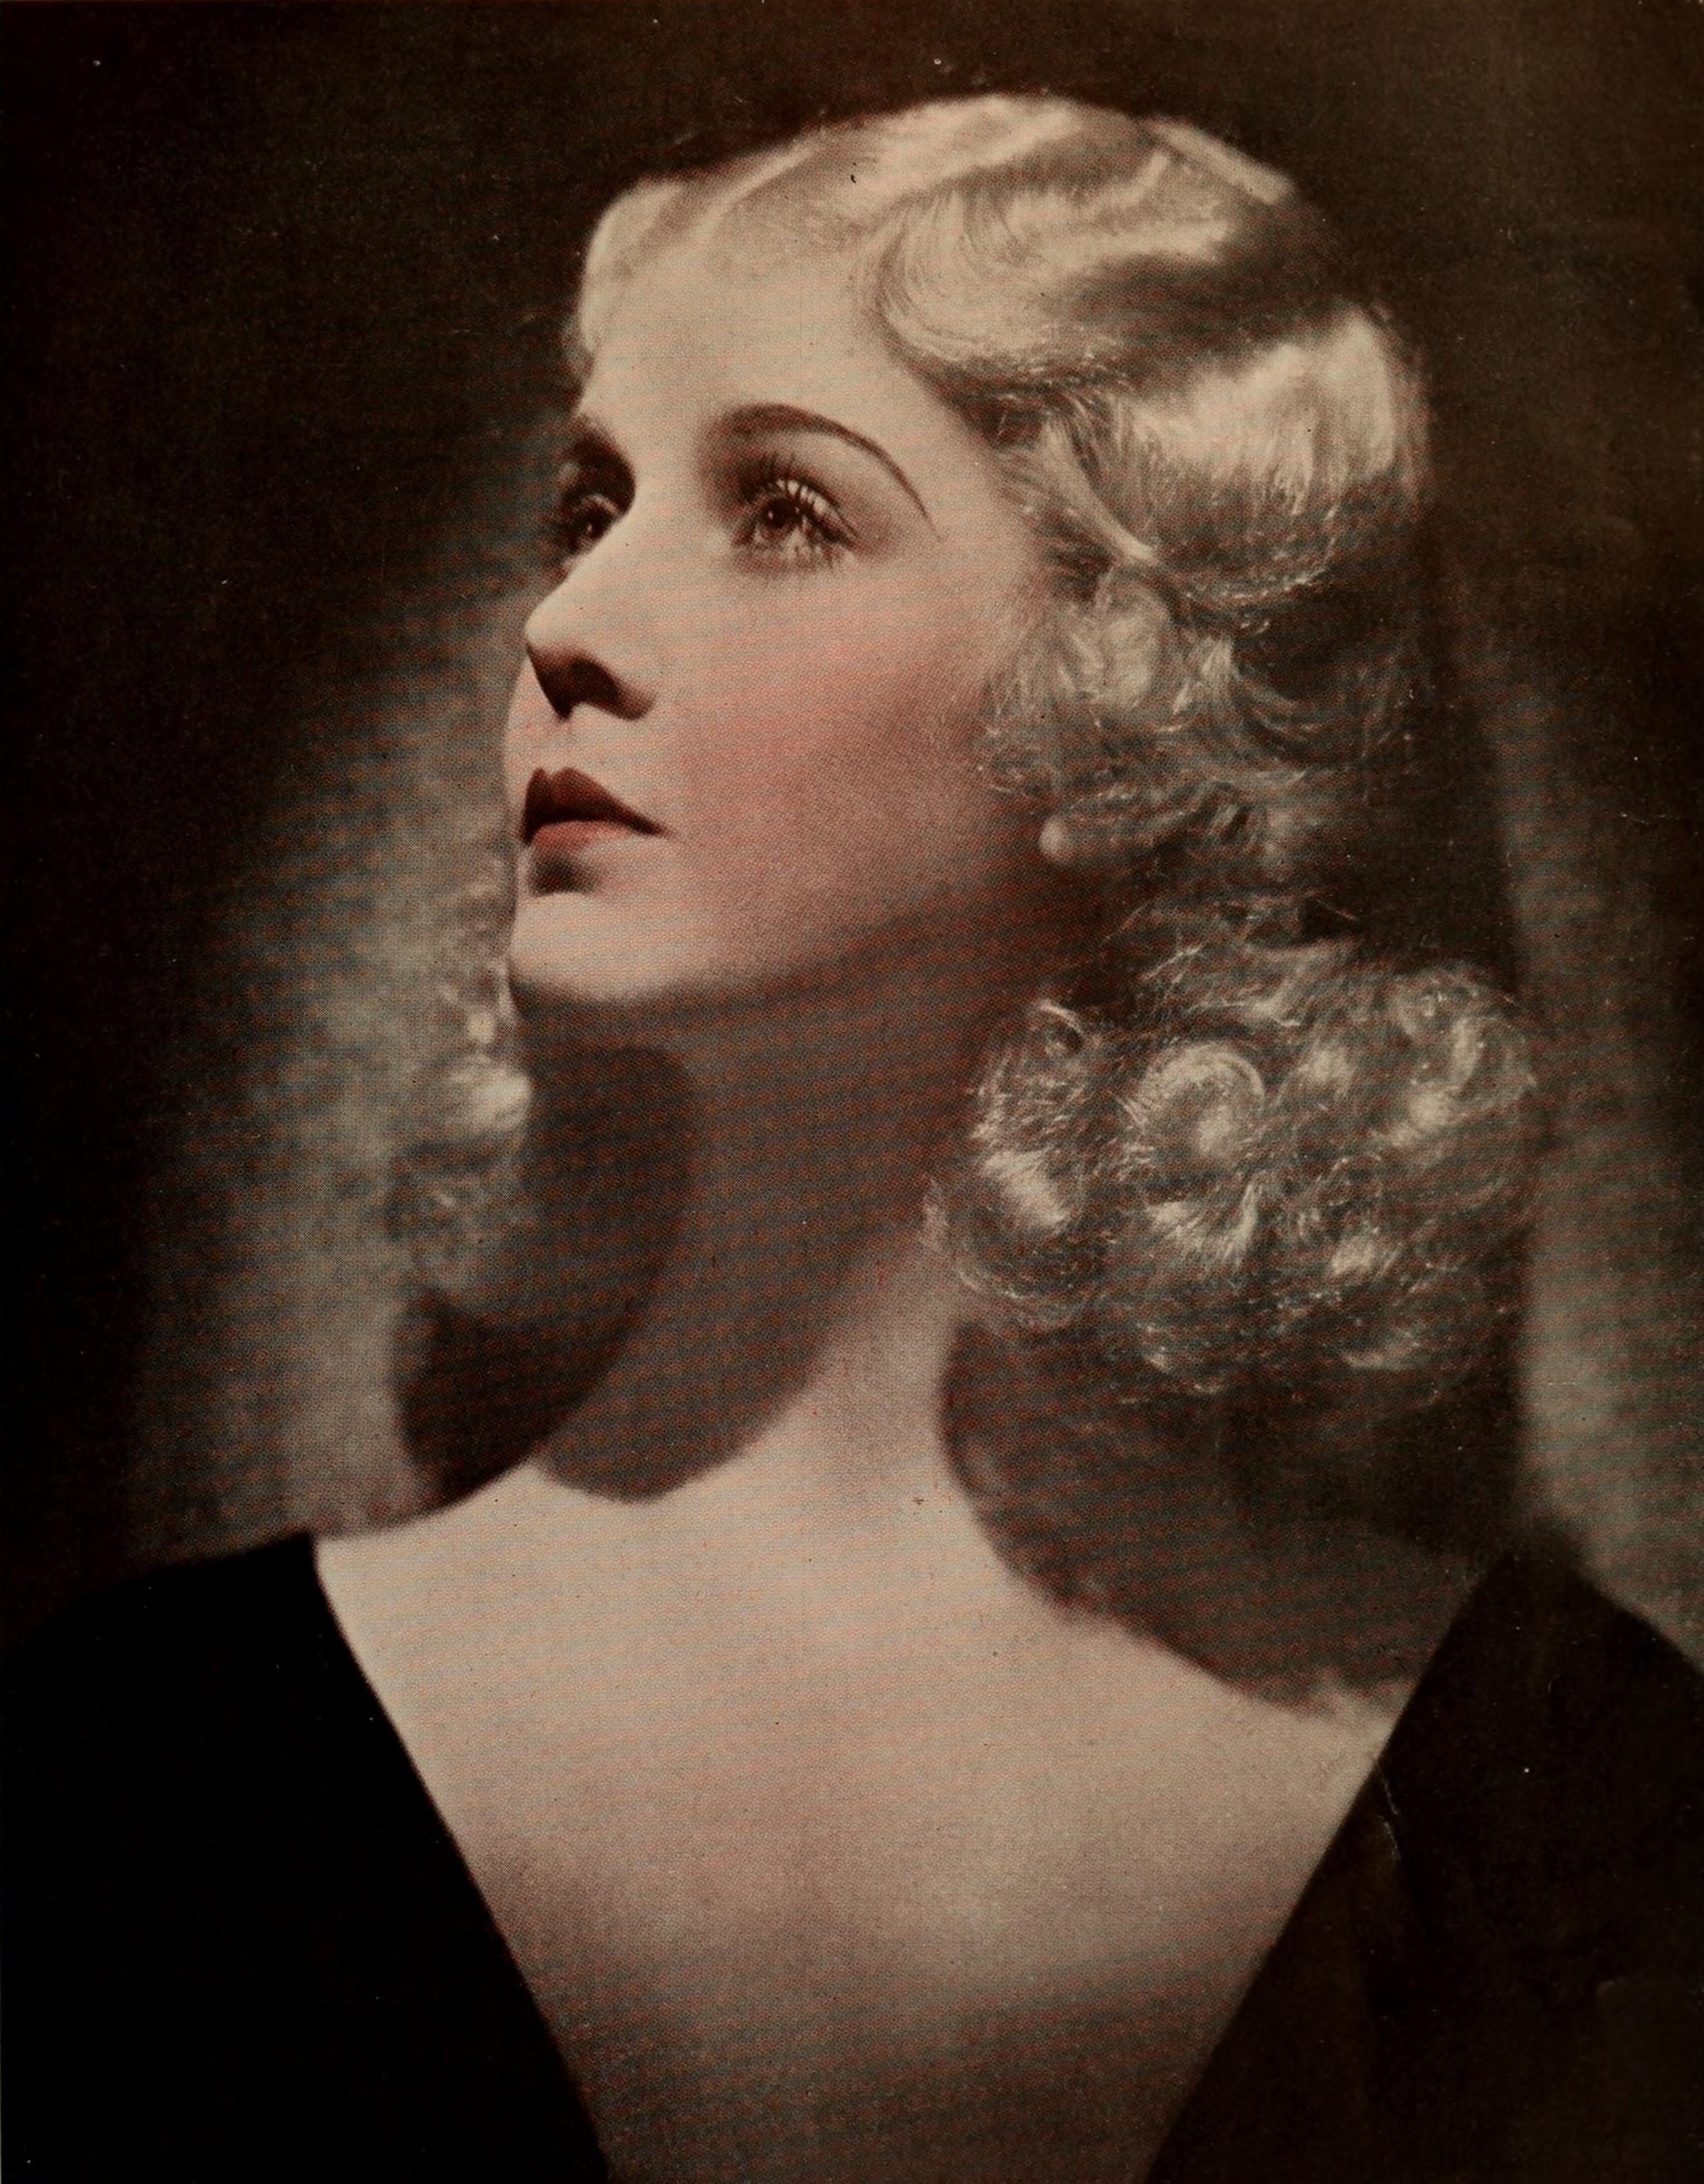 Anita Louise - Photoplay, December 1931